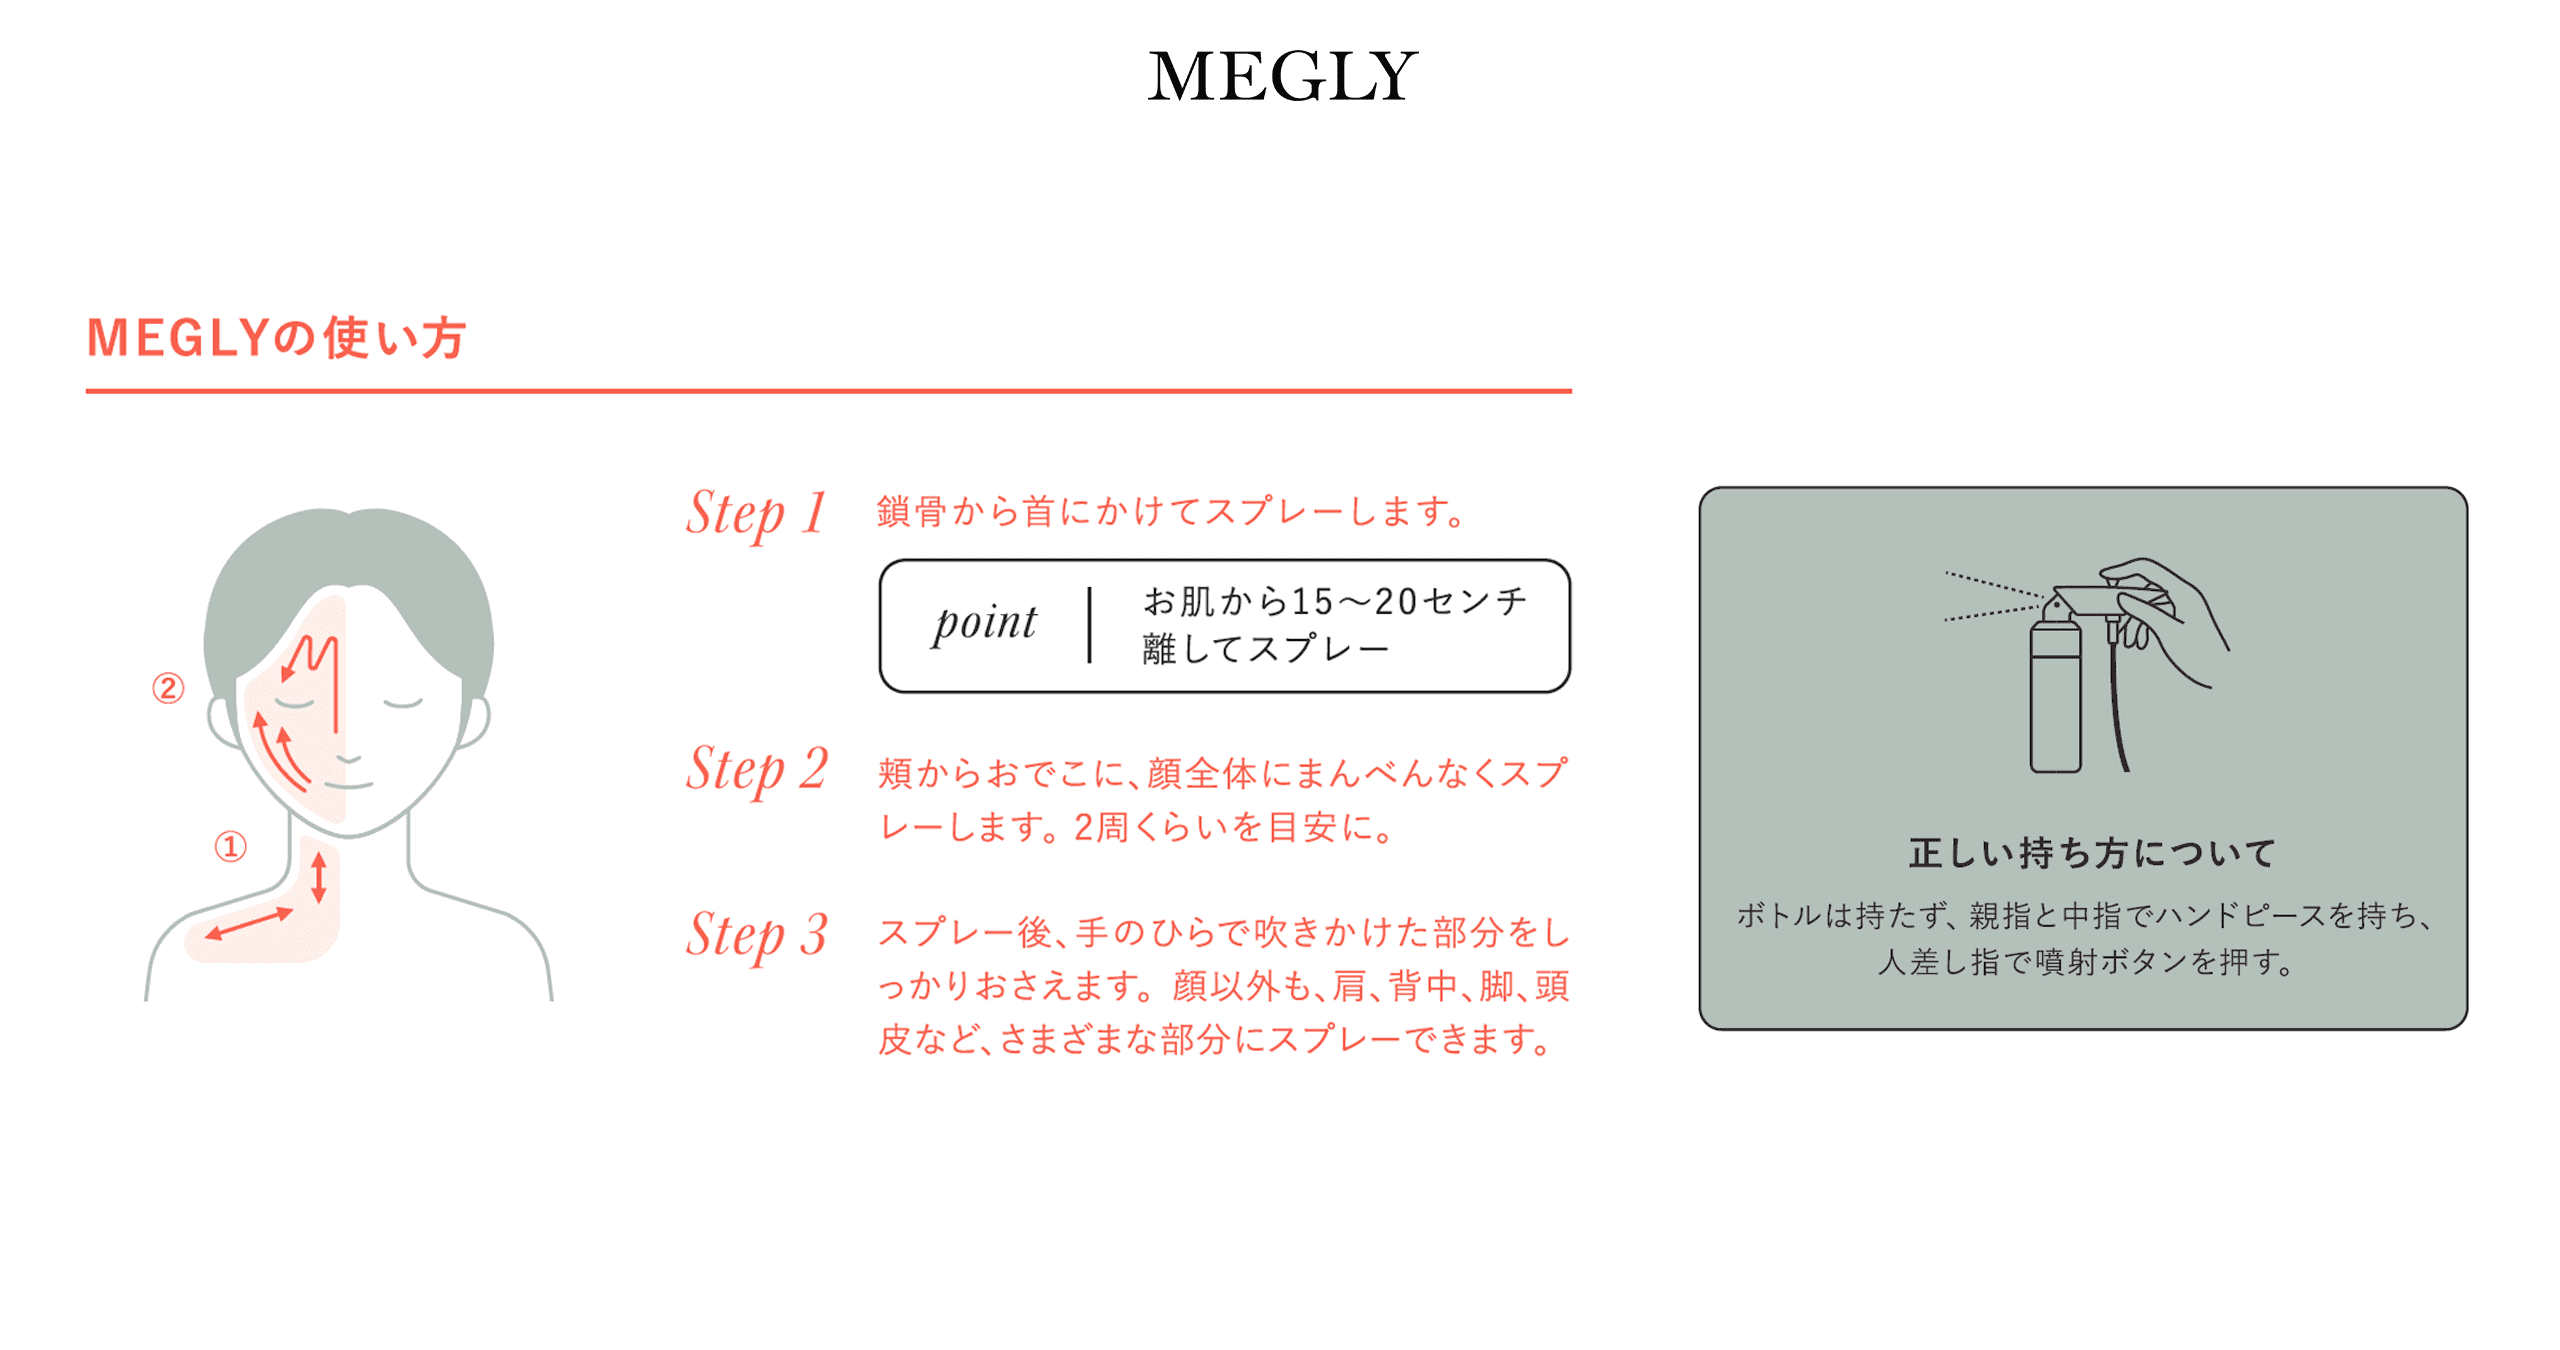 炭酸入り化粧水ミスト MEGLY ( メグリー ) - b8ta Japan